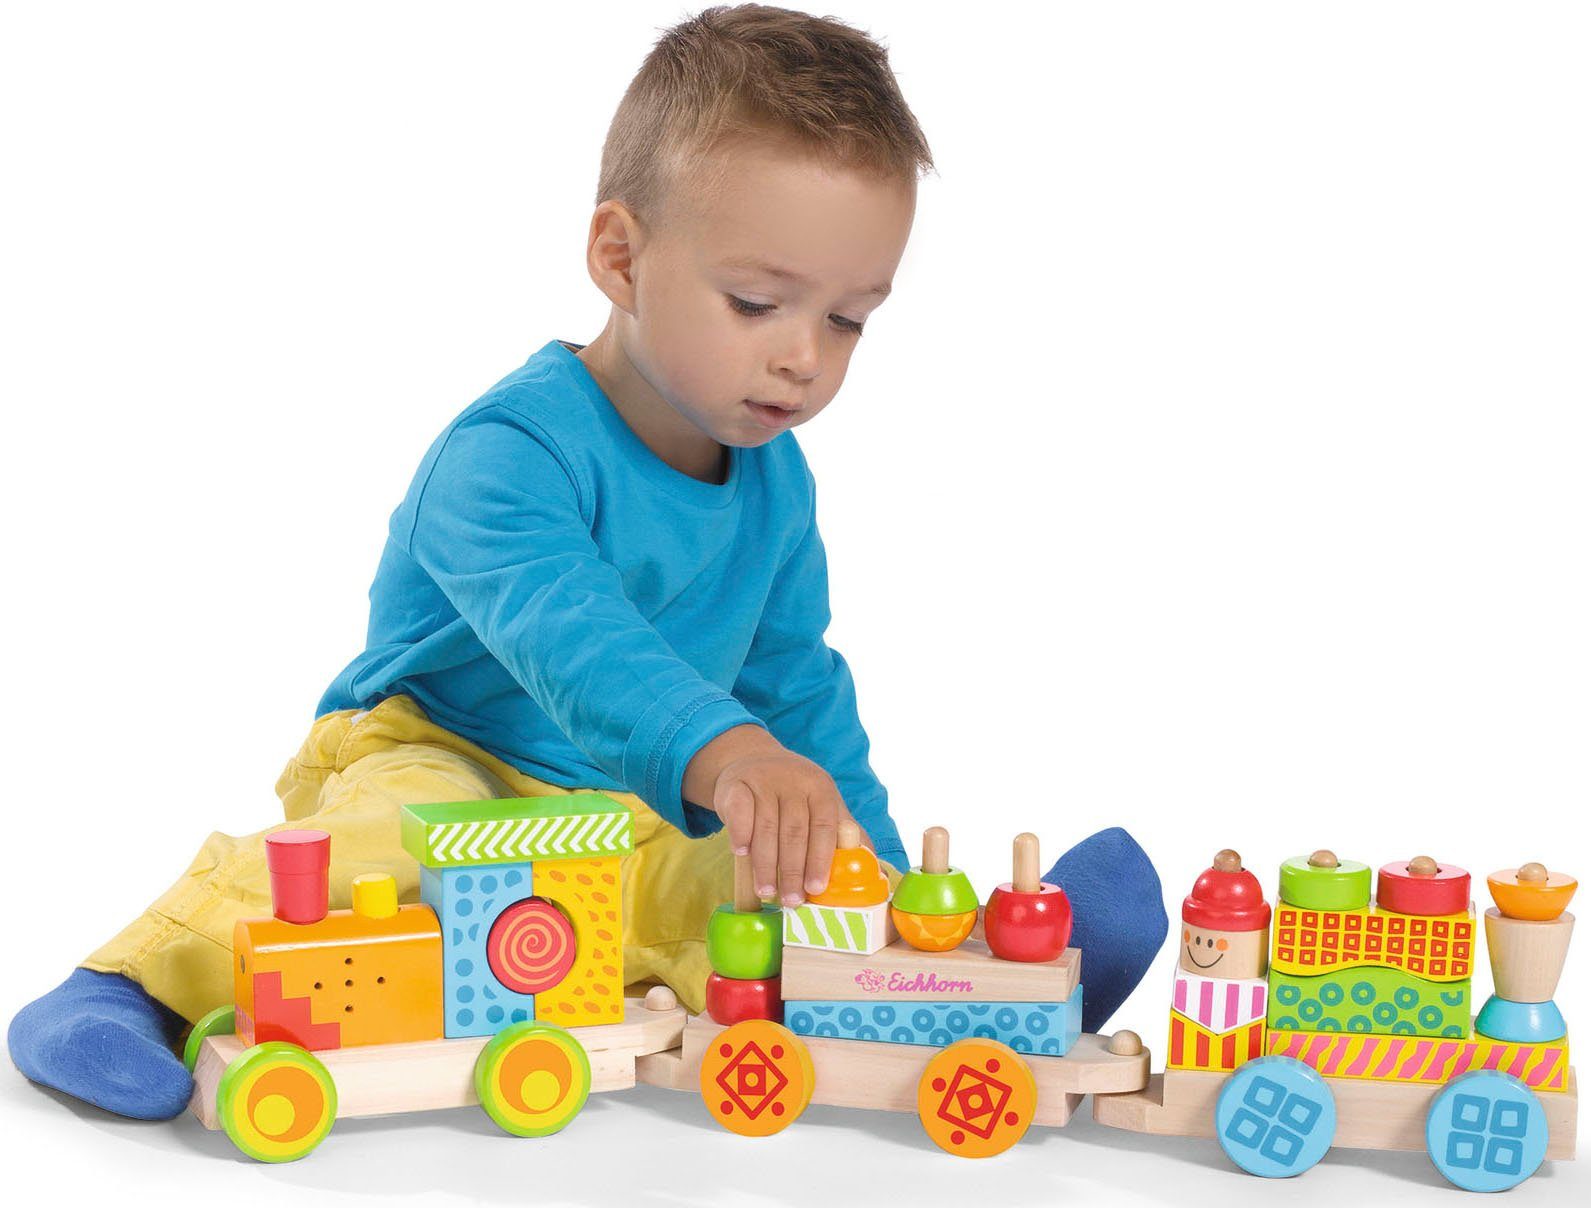 und Color, Spielzeug-Eisenbahn Holz-Soundzug, Holzspielzeug, Soundfunktion Licht- mit Eichhorn